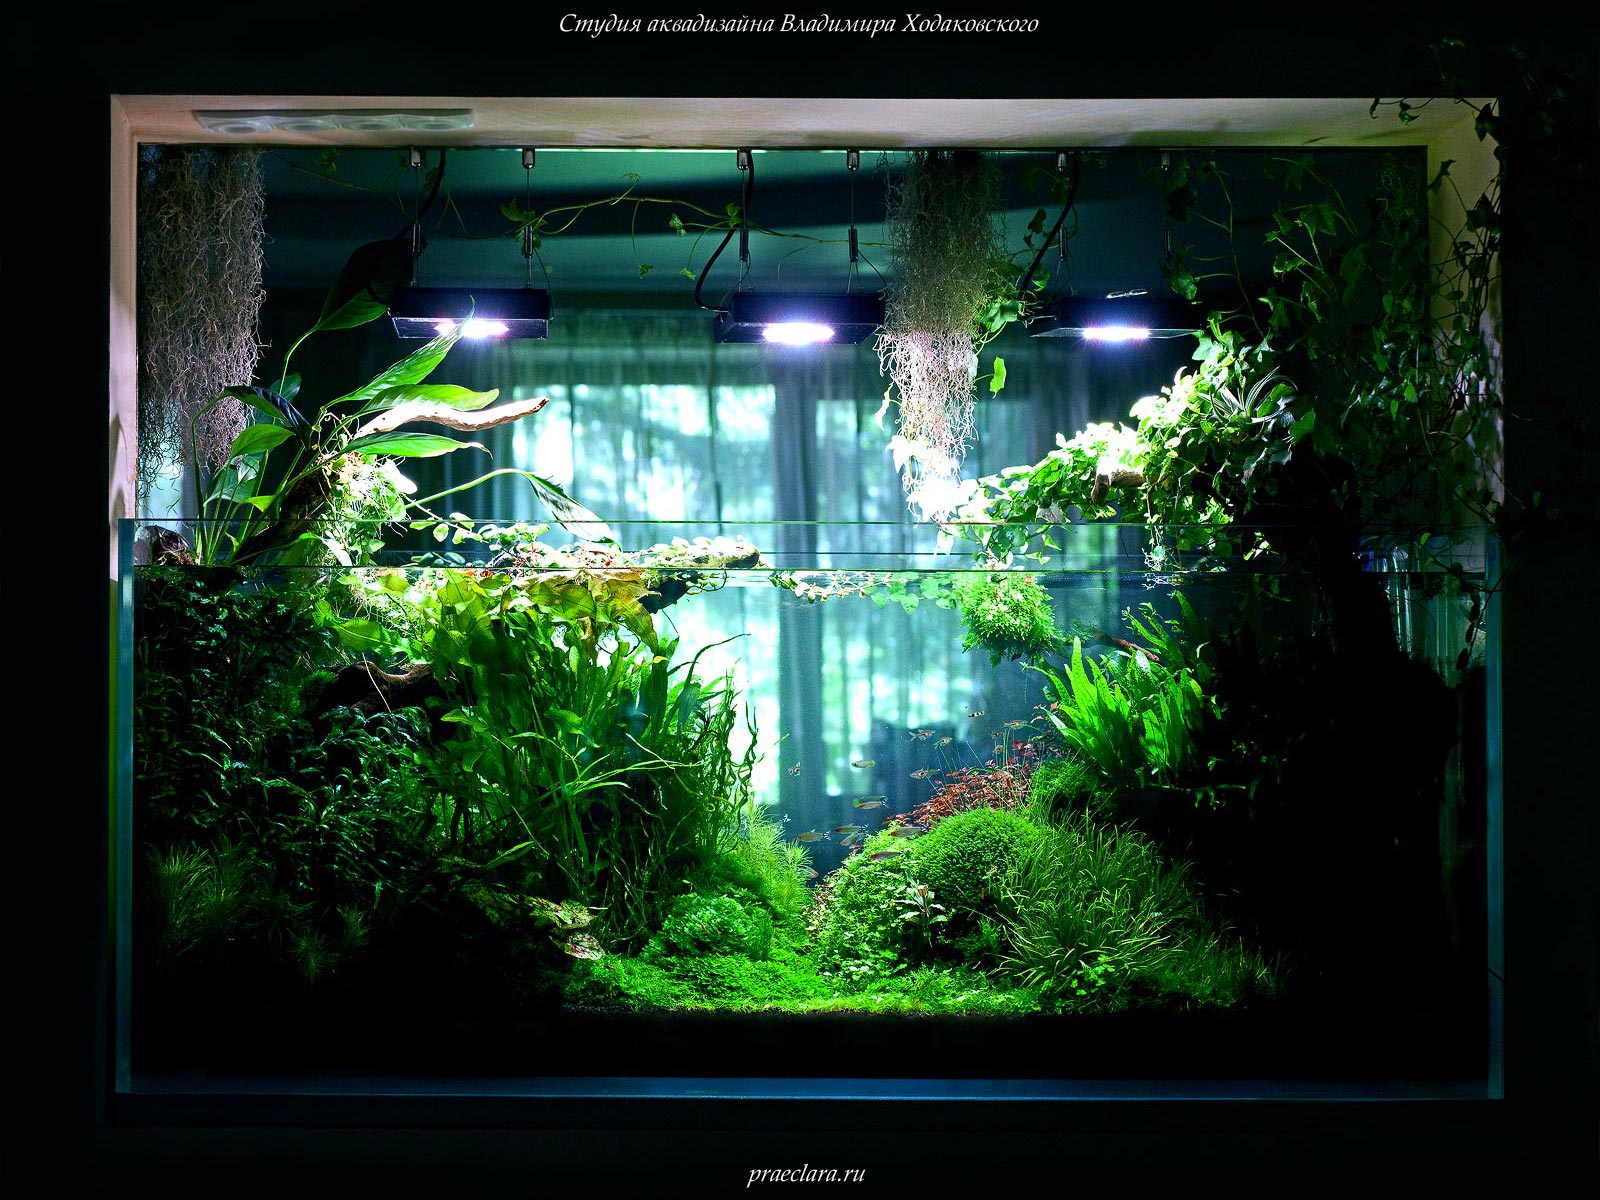 Светодиодные светильники в растительном аквариуме